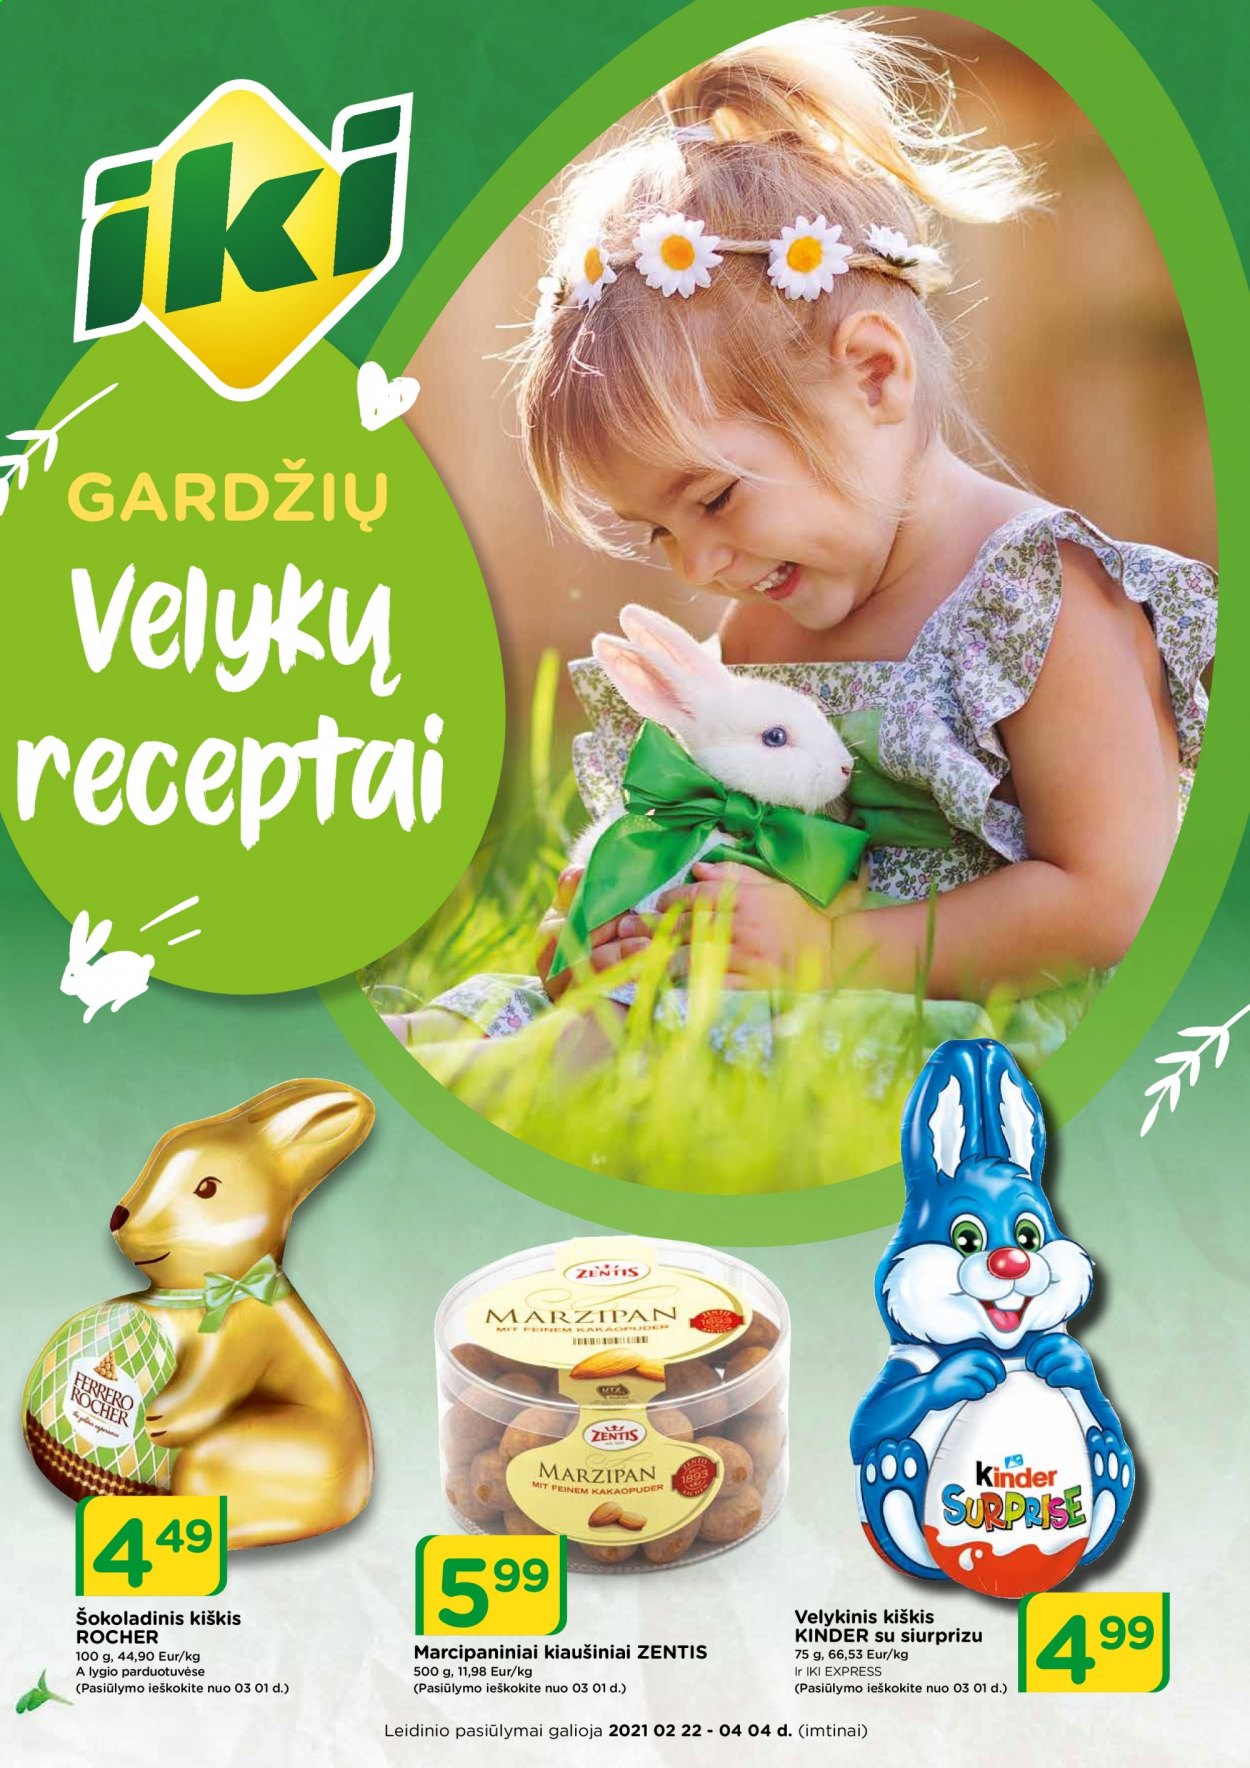 thumbnail - „iki“ leidinys - 2021 02 22 - 2021 04 04 - Išpardavimų produktai - kiaušiniai, Ferrero Rocher. 1 puslapis.